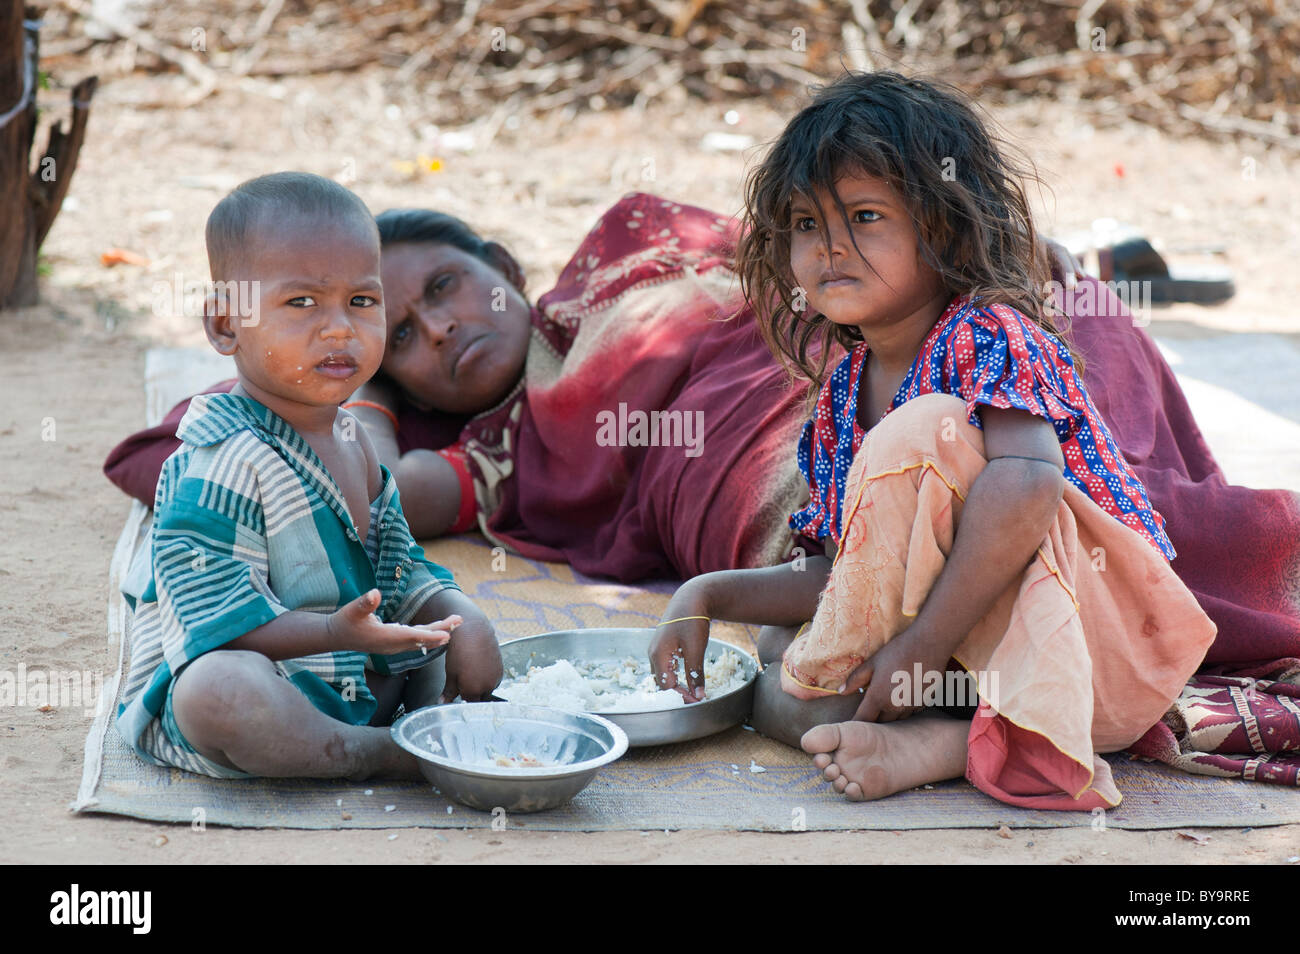 Pobre madre india de castas inferiores y los niños de comer arroz. En Andhra Pradesh, India Foto de stock